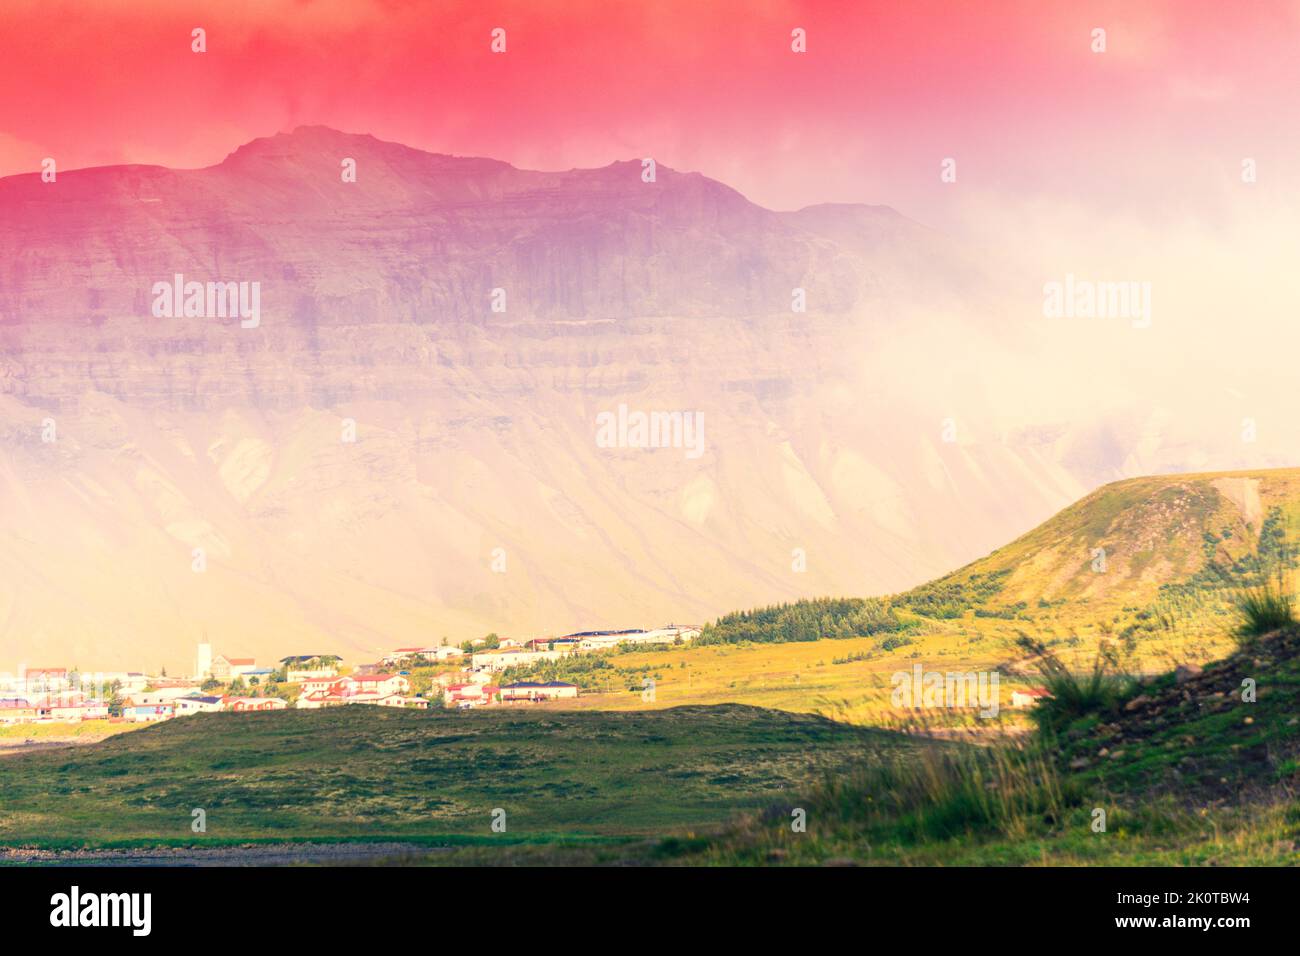 Montagne in Islanda, regione di Sudurland - fotografia HDR Foto Stock